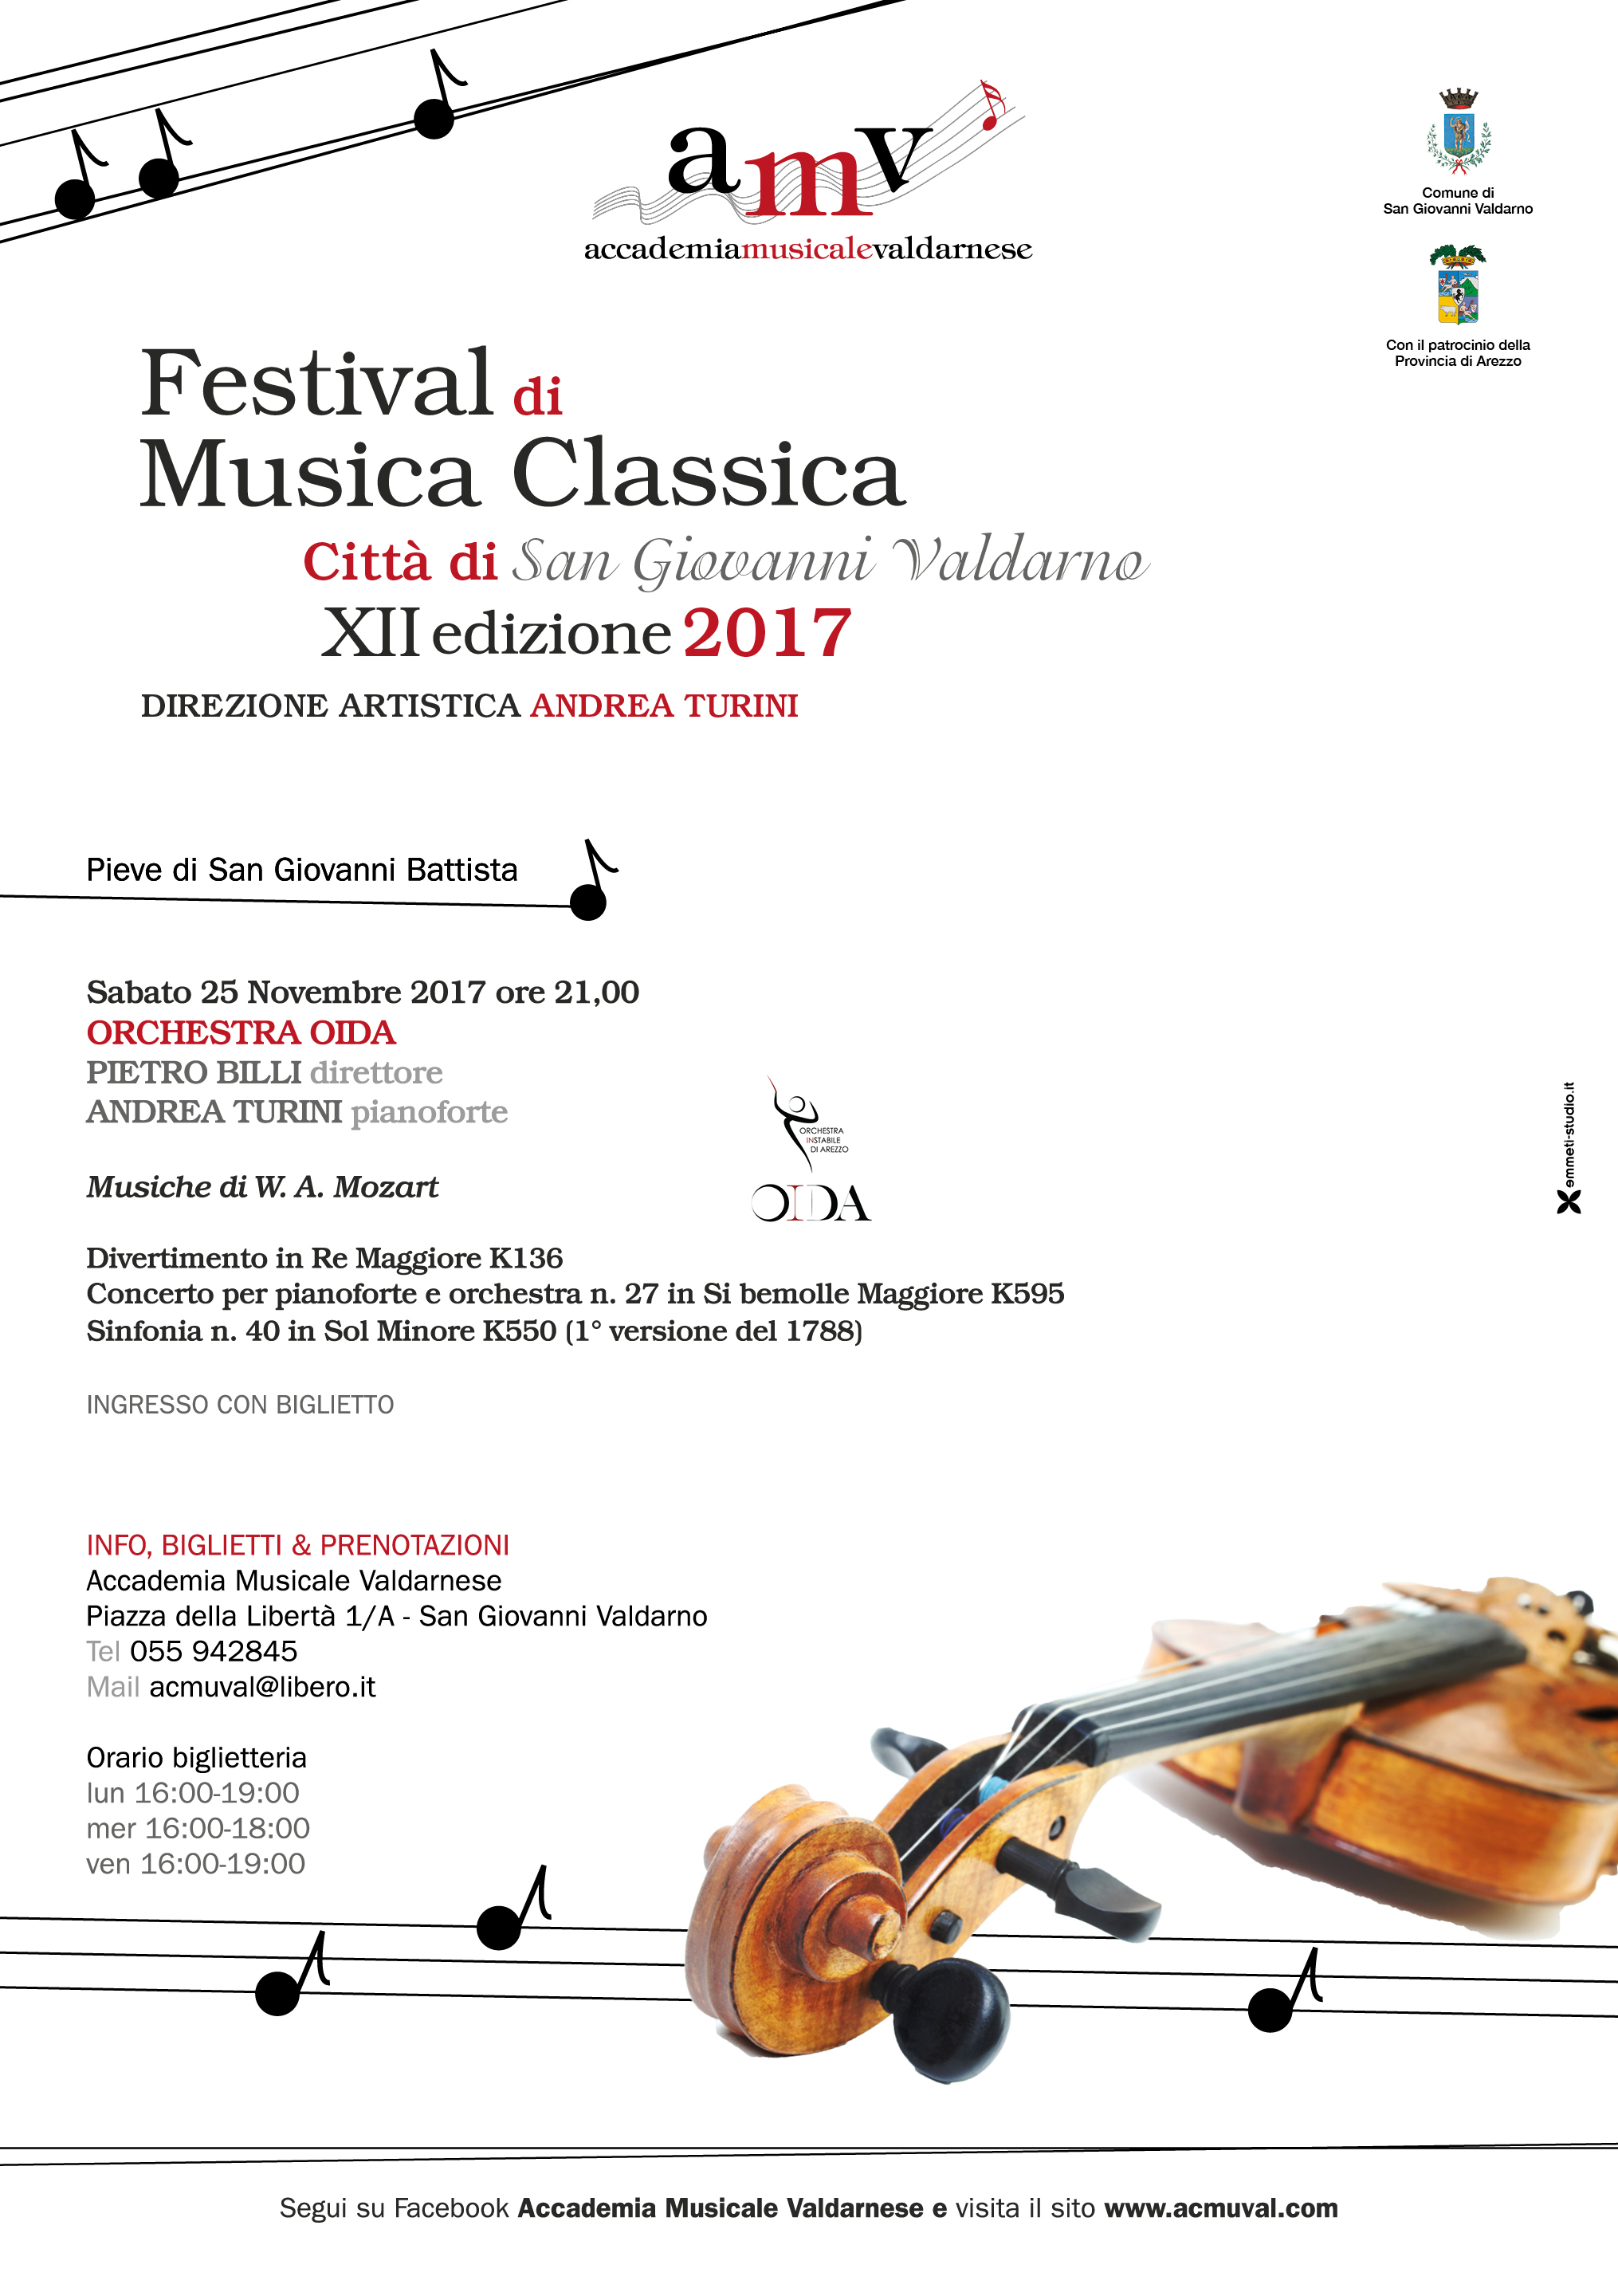 Festival di Musica Classica Città di San Giovanni Valdarno – XII edizione